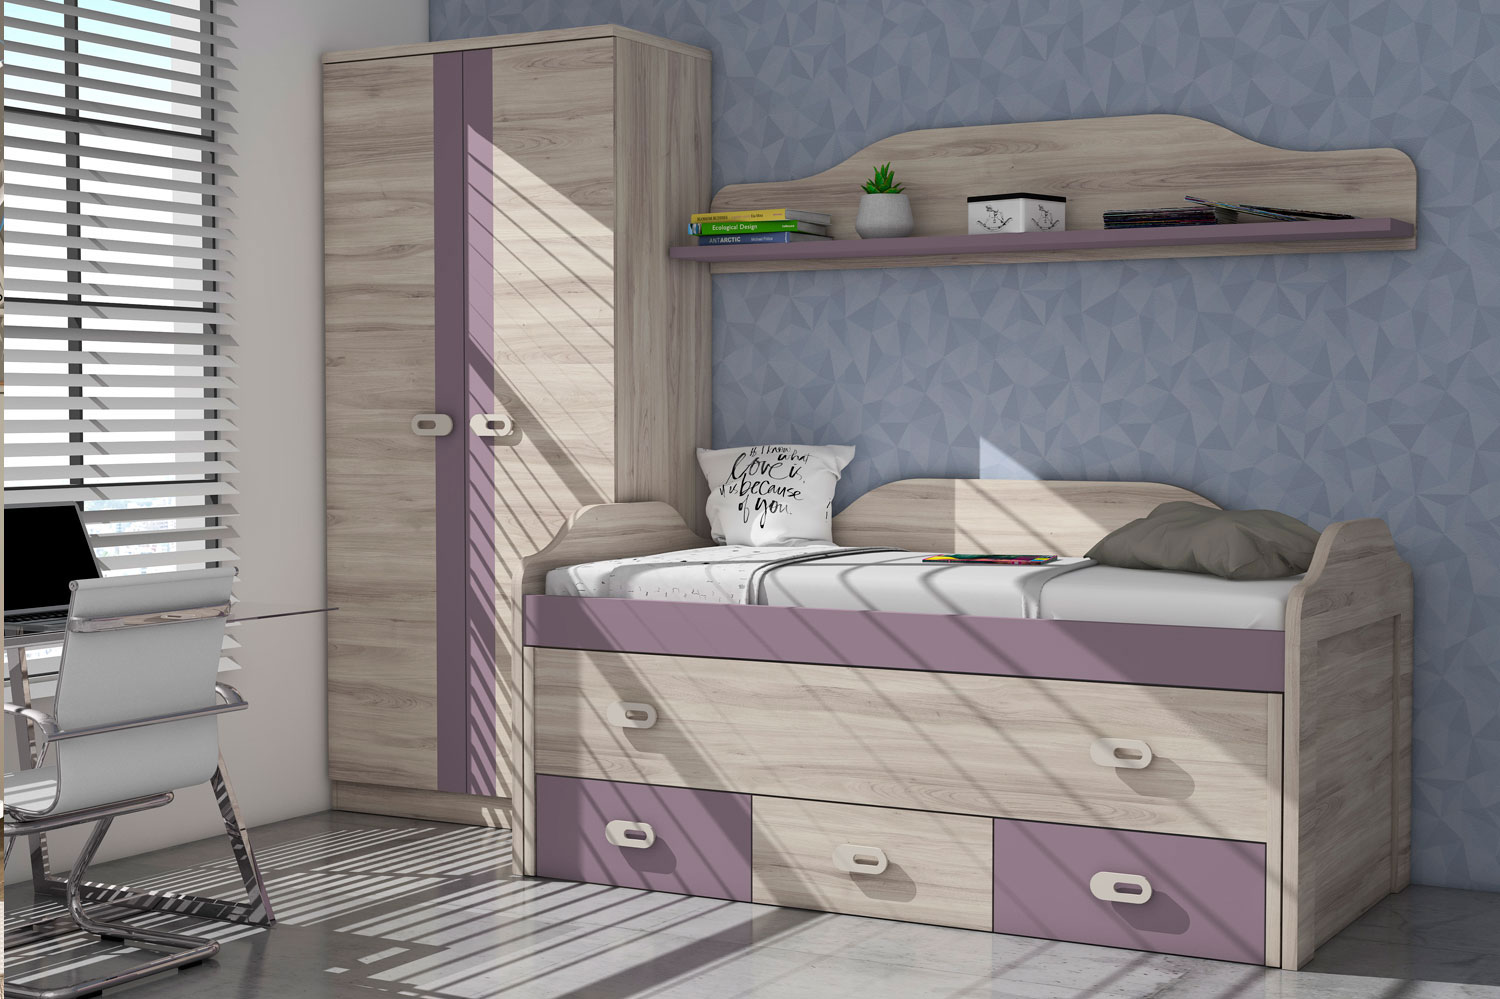 Dormitorio juvenil completo en color berengena y roble | Rapimueble